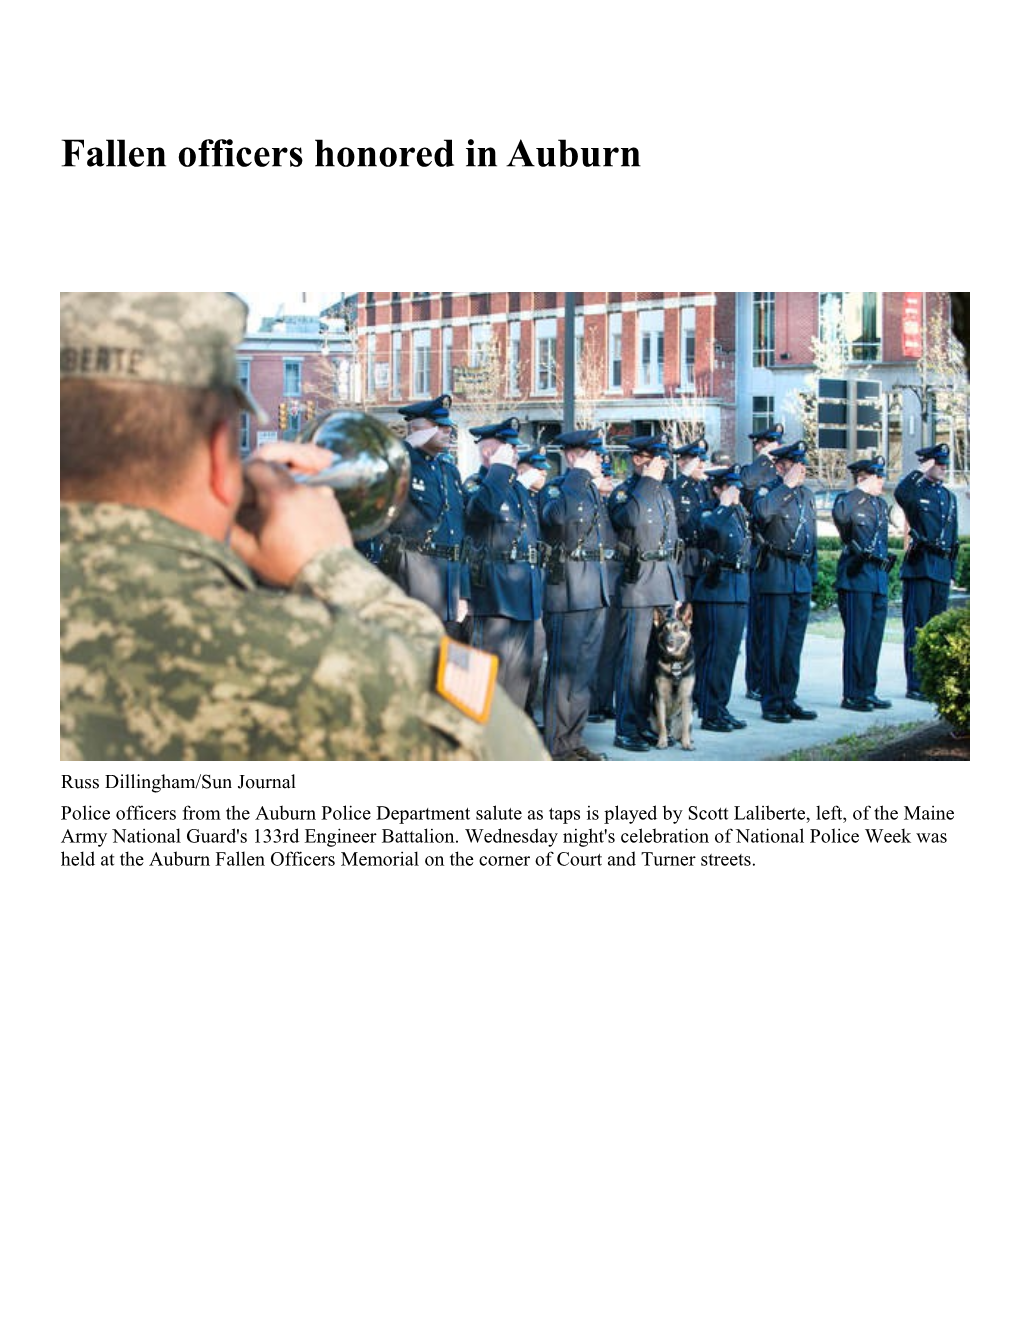 Fallen Officers Honored in Auburn